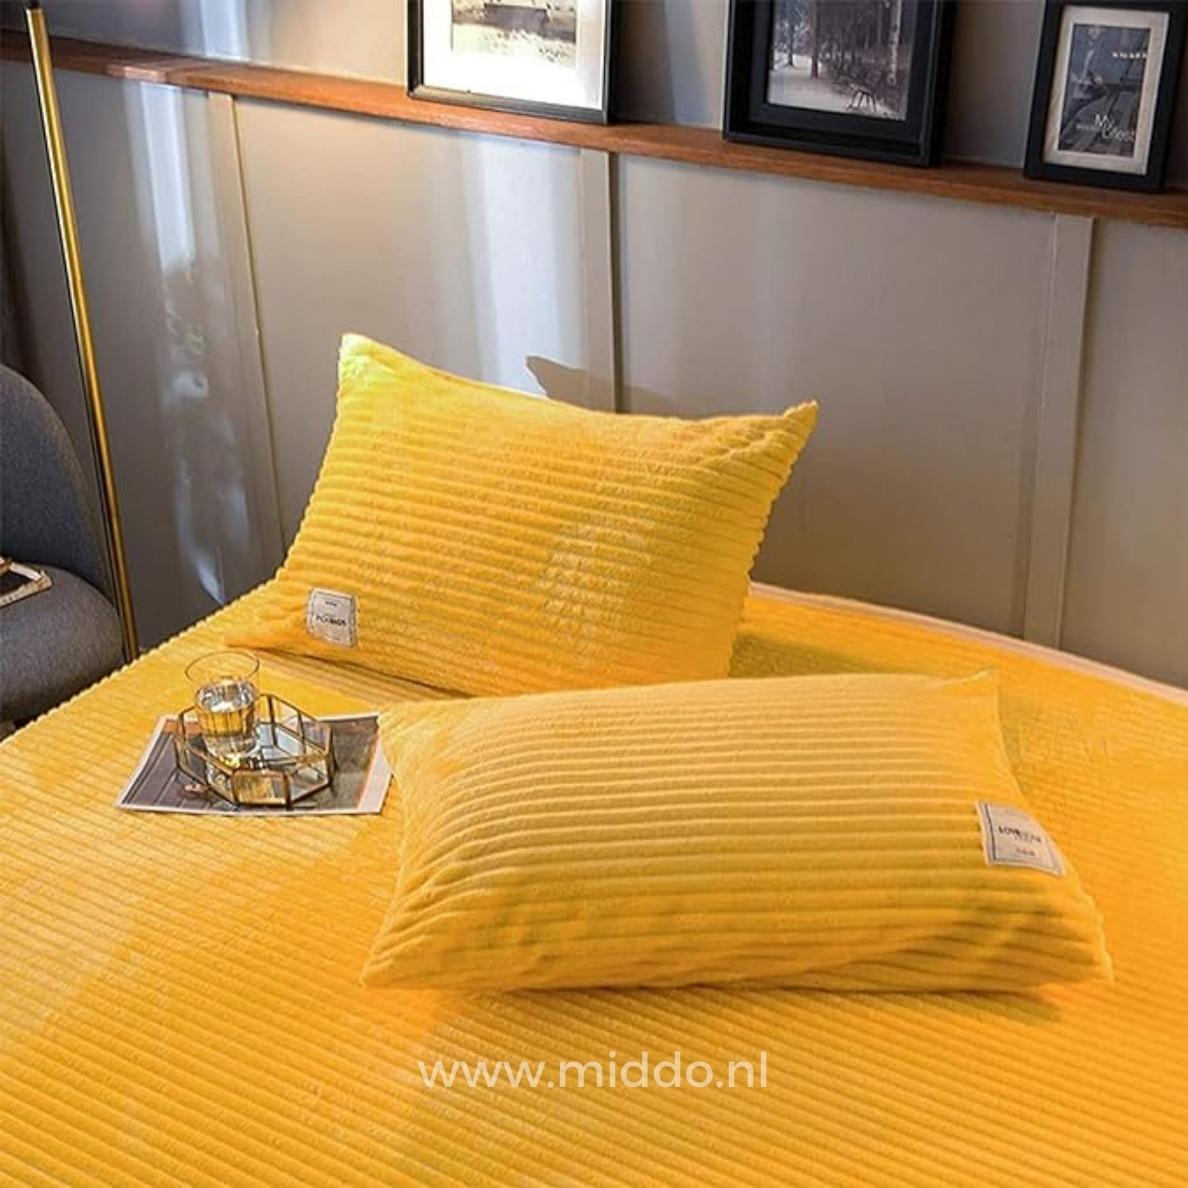 2 kussens met gele kussenslopen op een bed